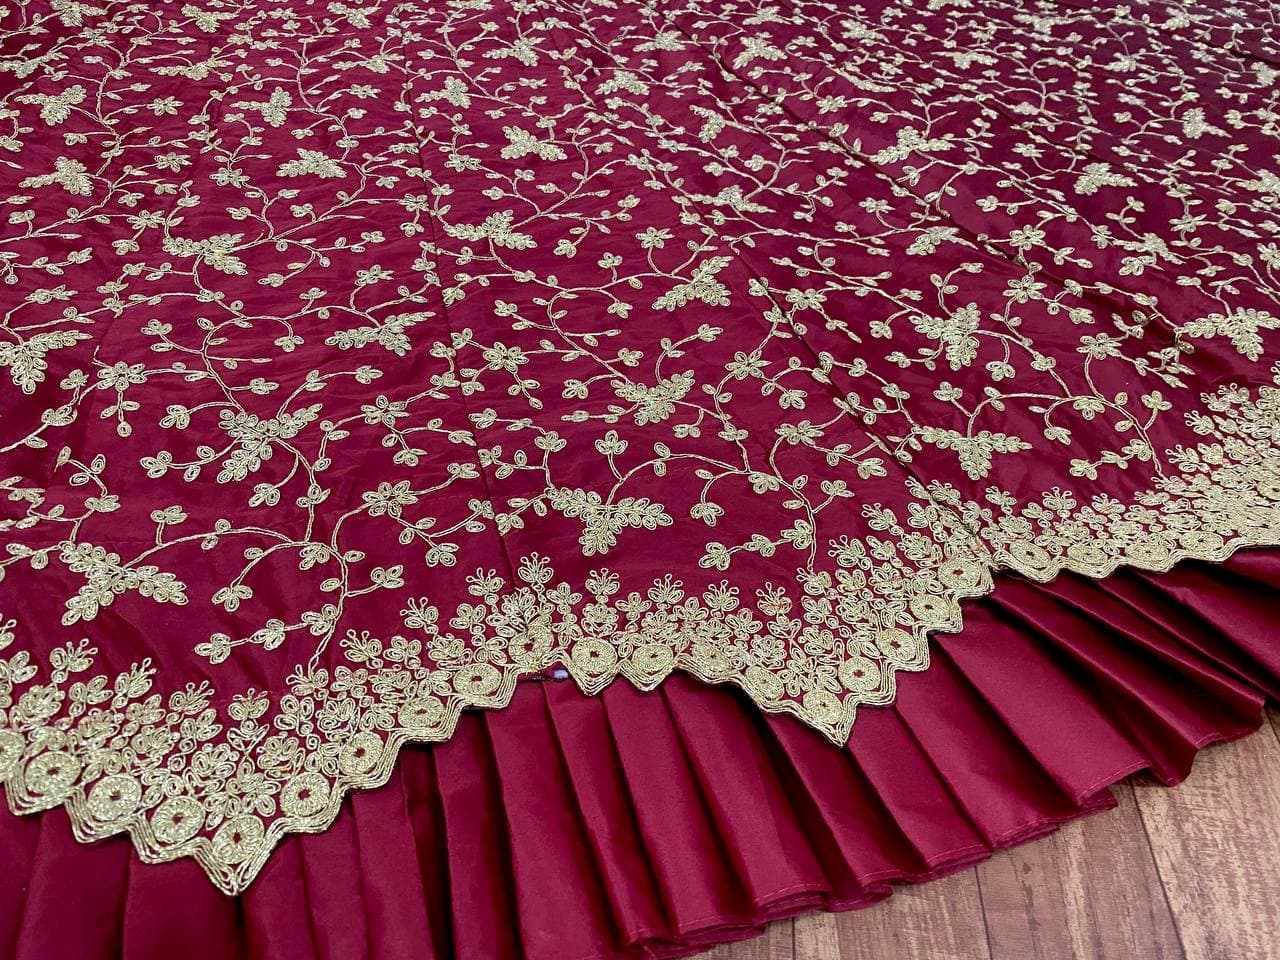 Maroon Lehenga Choli In Malai Satin Silk With Cording Dori Work